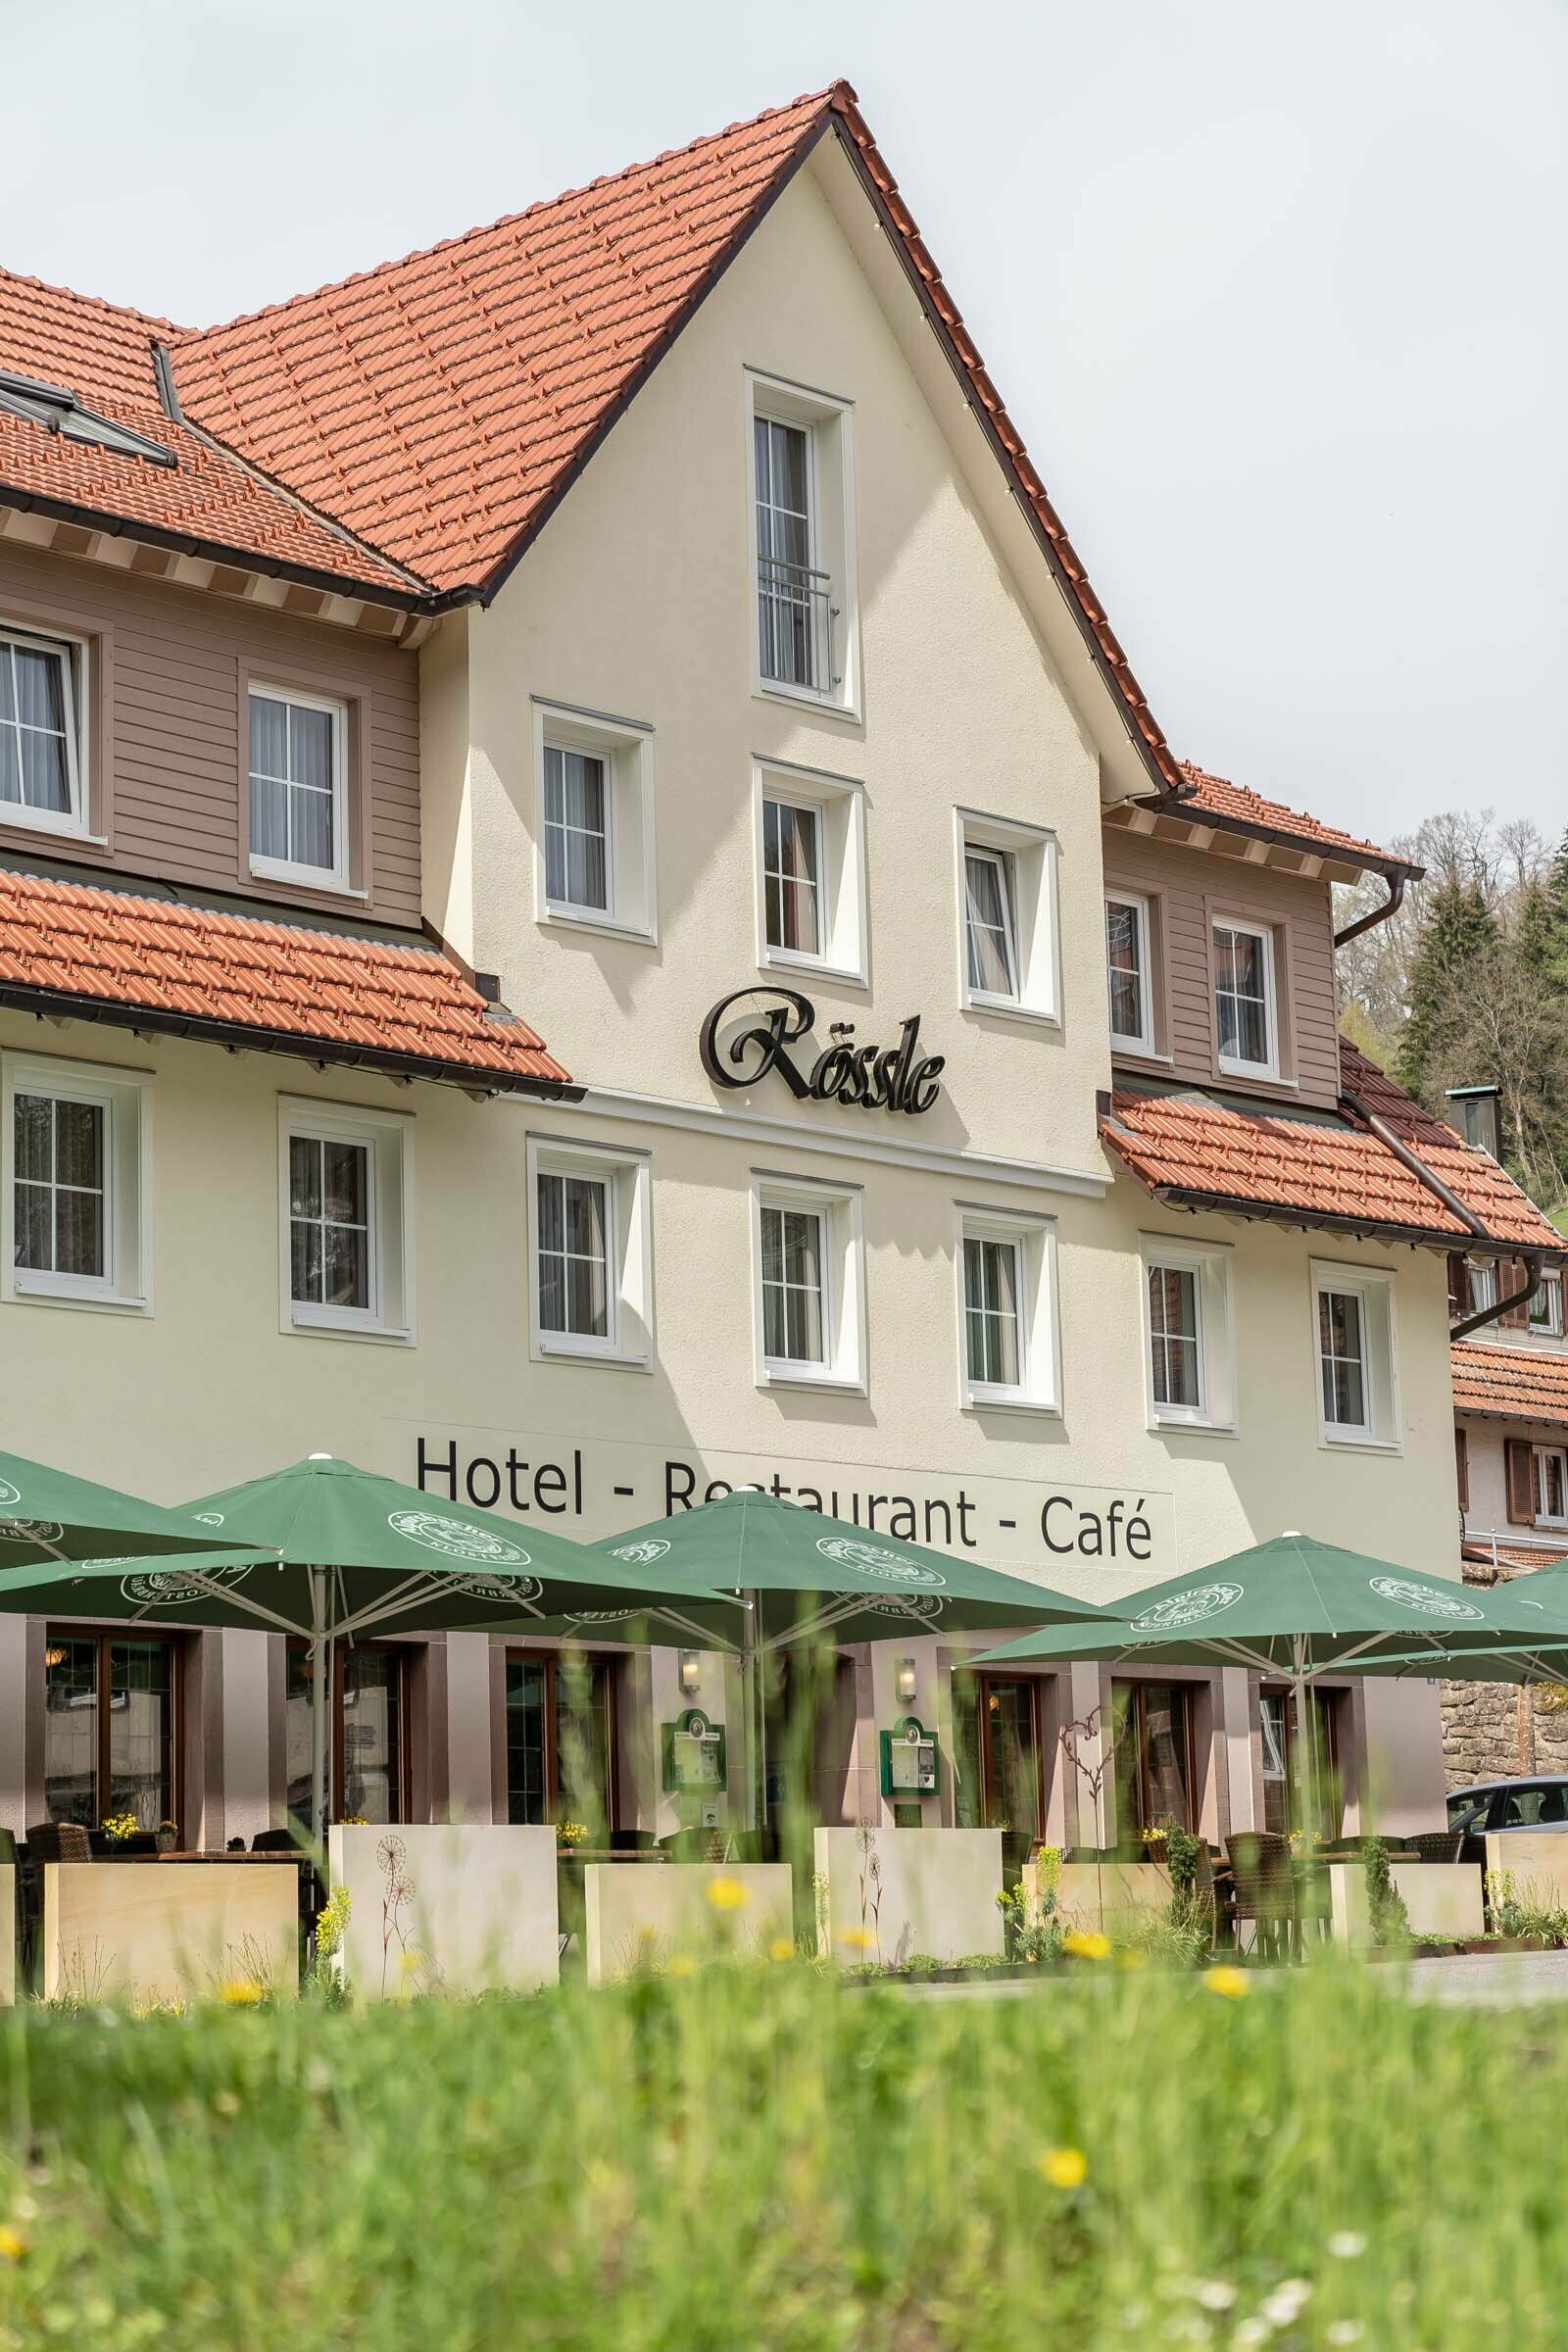 3 Tage Natur pur im schönen Schwarzwald – Hotel Rössle Berneck  in Altensteig, Baden-Württemberg inkl. Halbpension